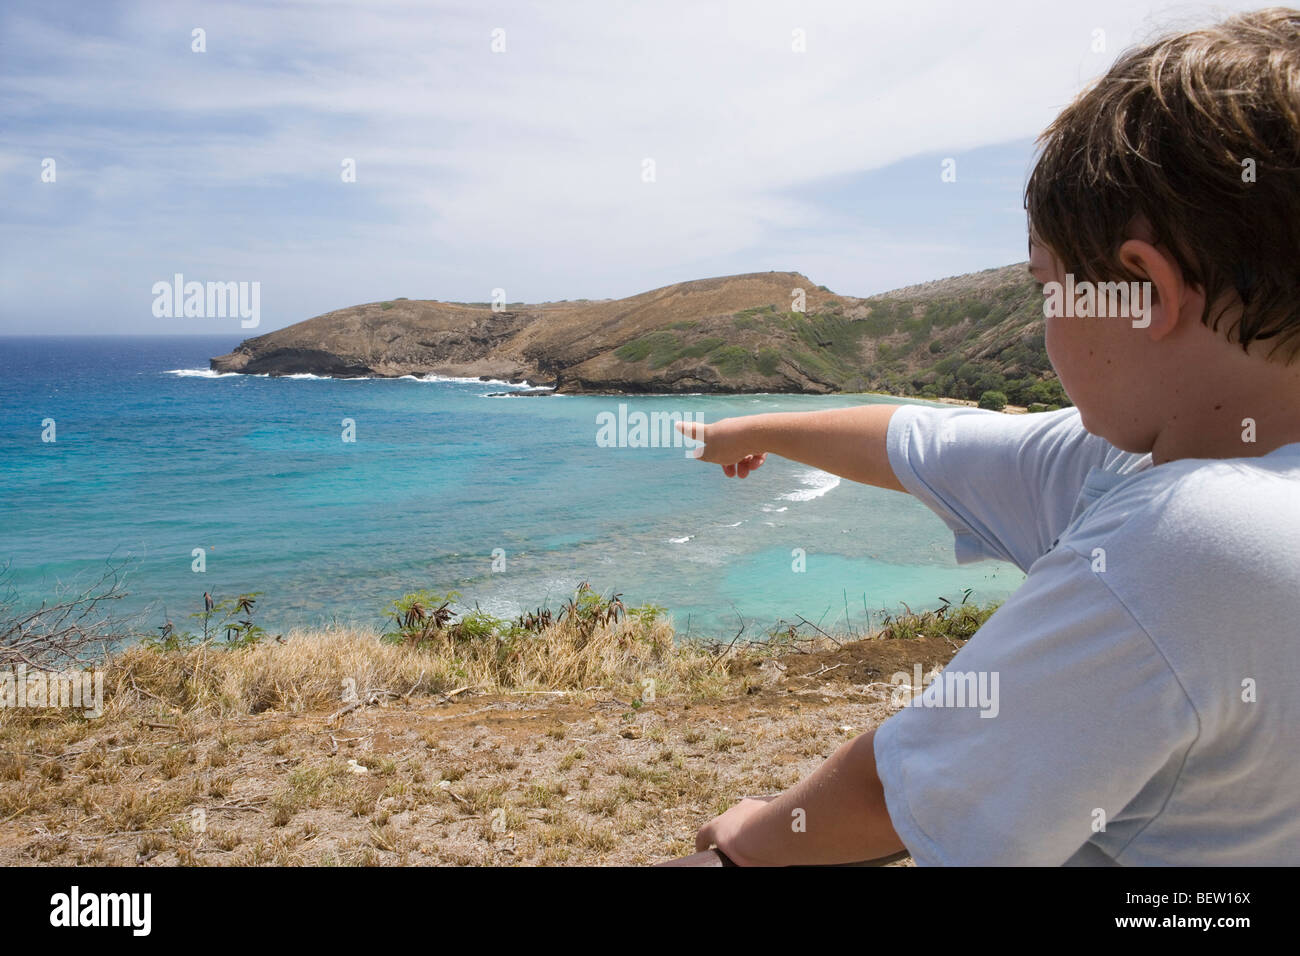 ten year old boy points to Hanauma Bay in Honolulu Hawaii Stock Photo